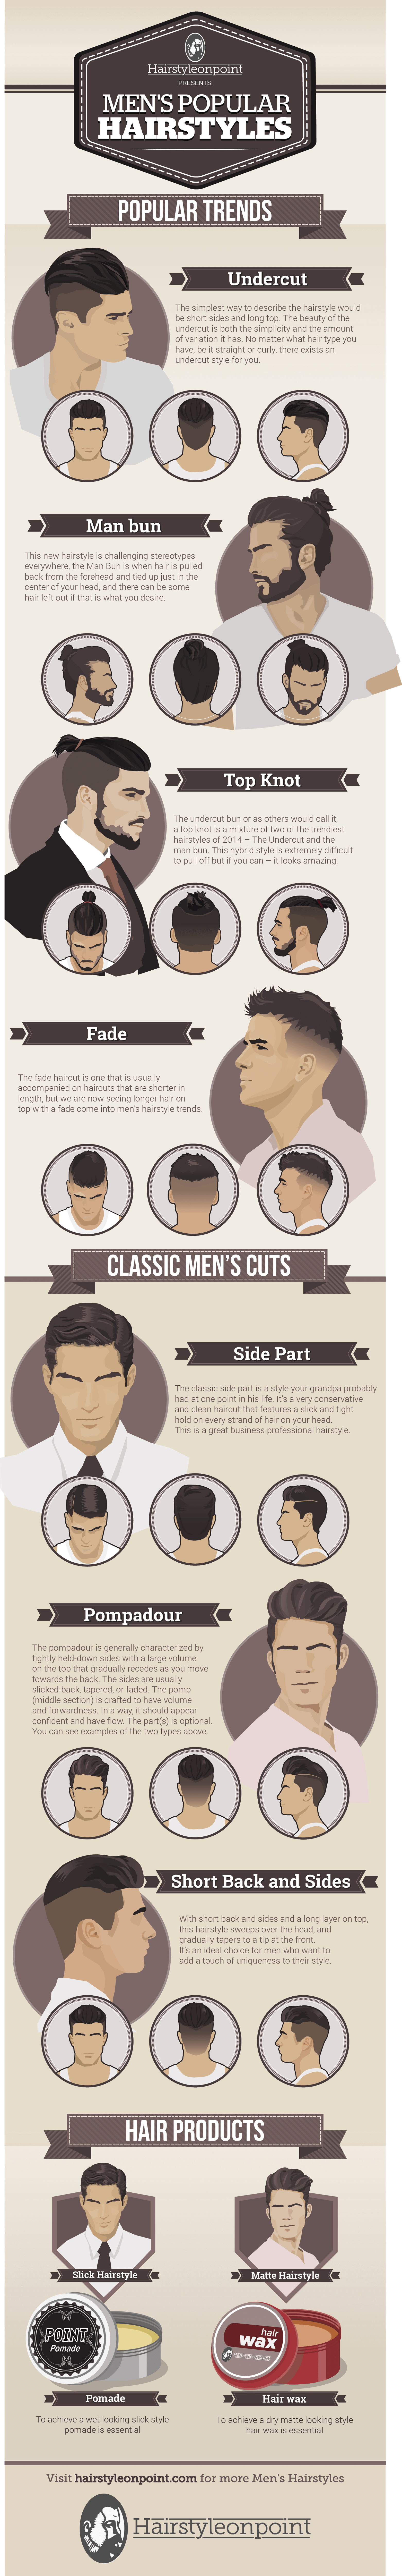 HairStyleOnPoint_infographic-mardistas